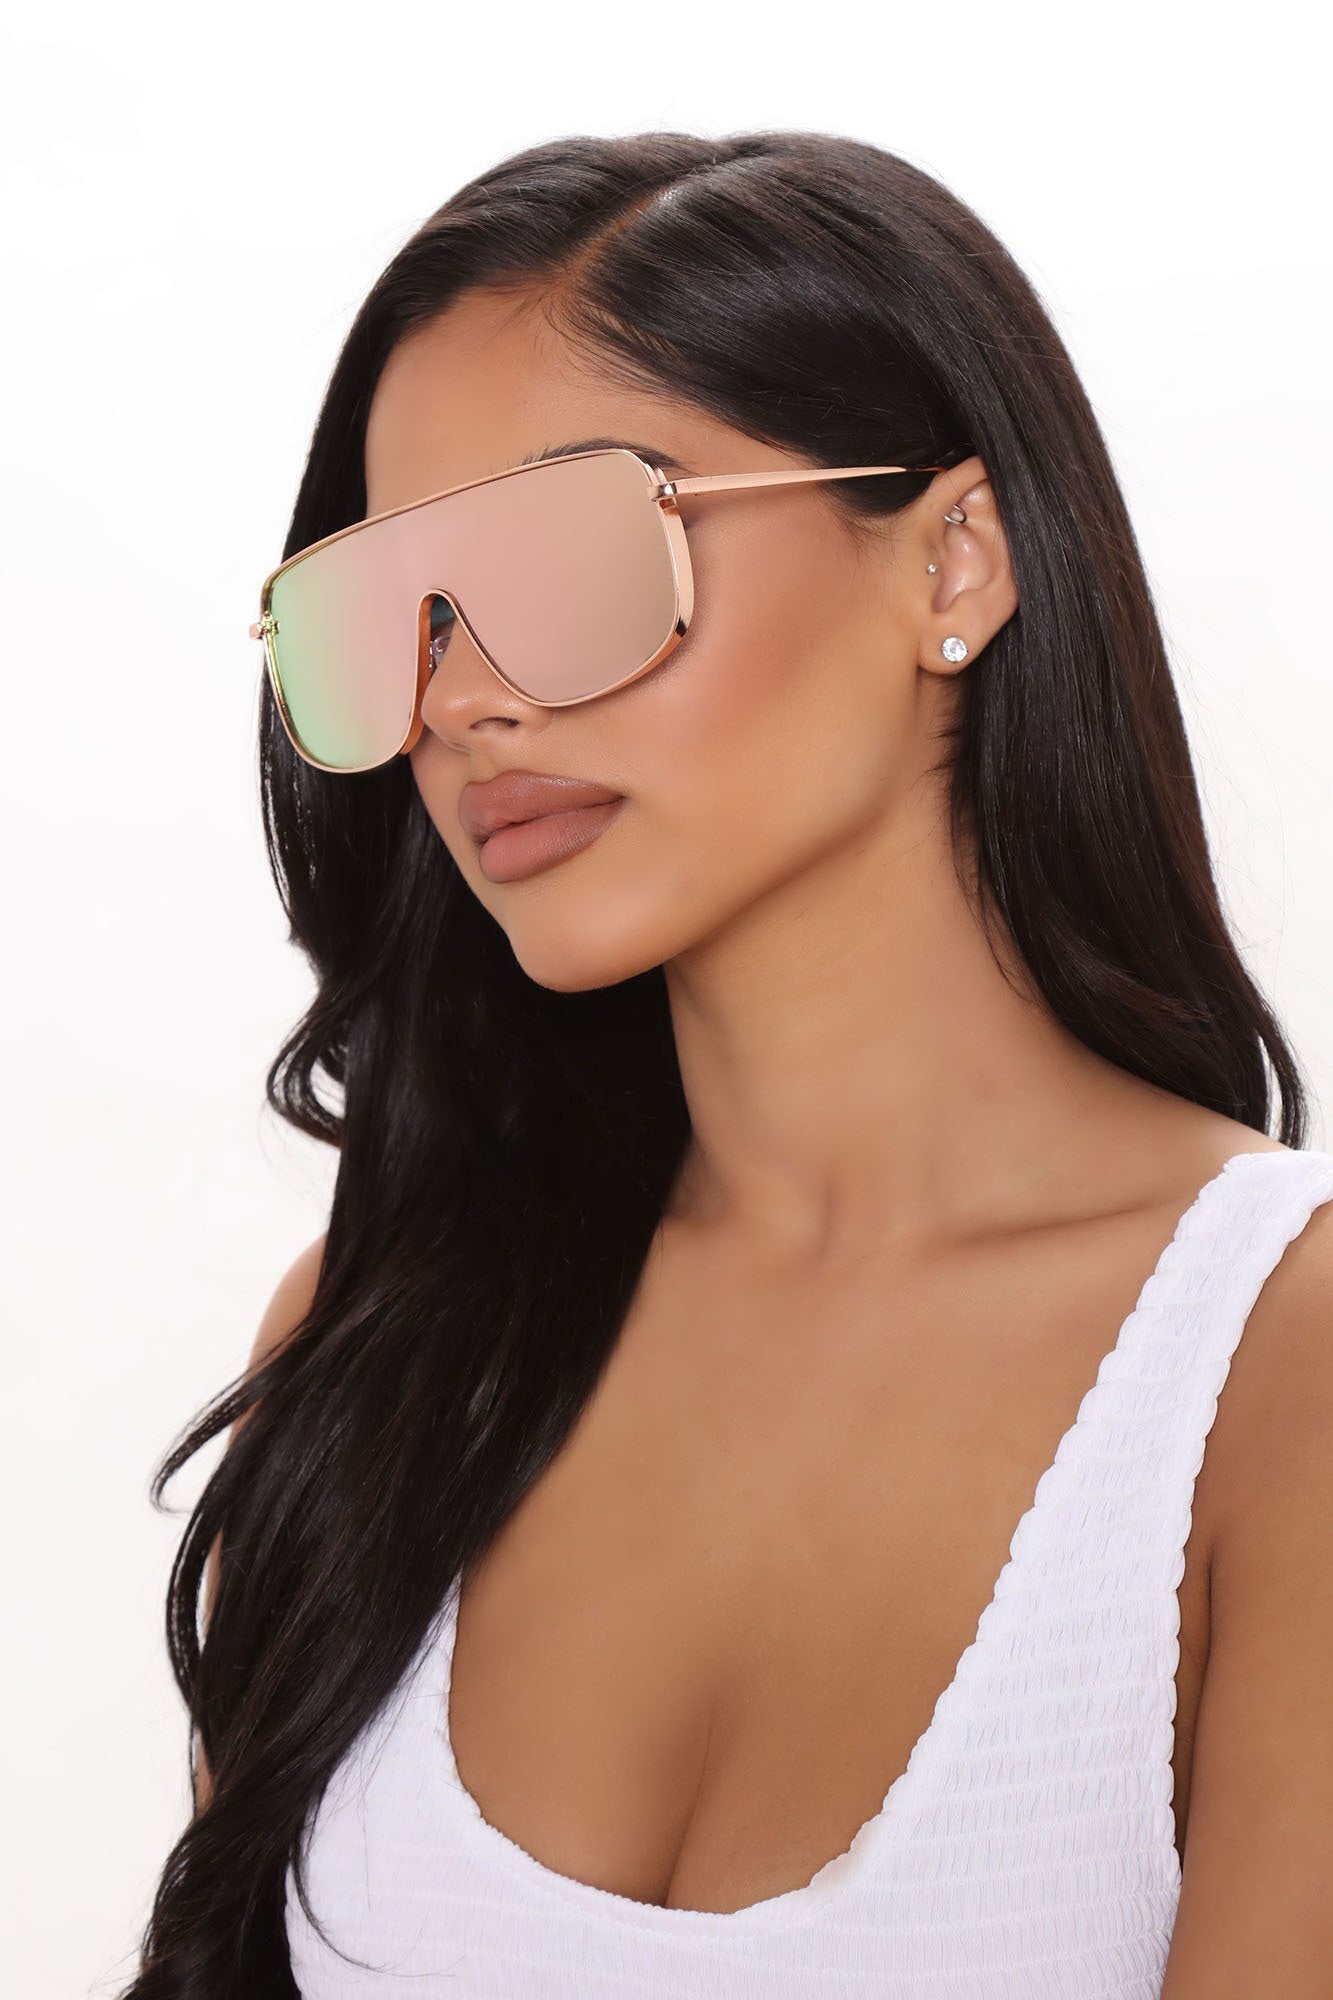 Don't Block Me Sunglasses - Rose Gold, Fashion Nova, Sunglasses